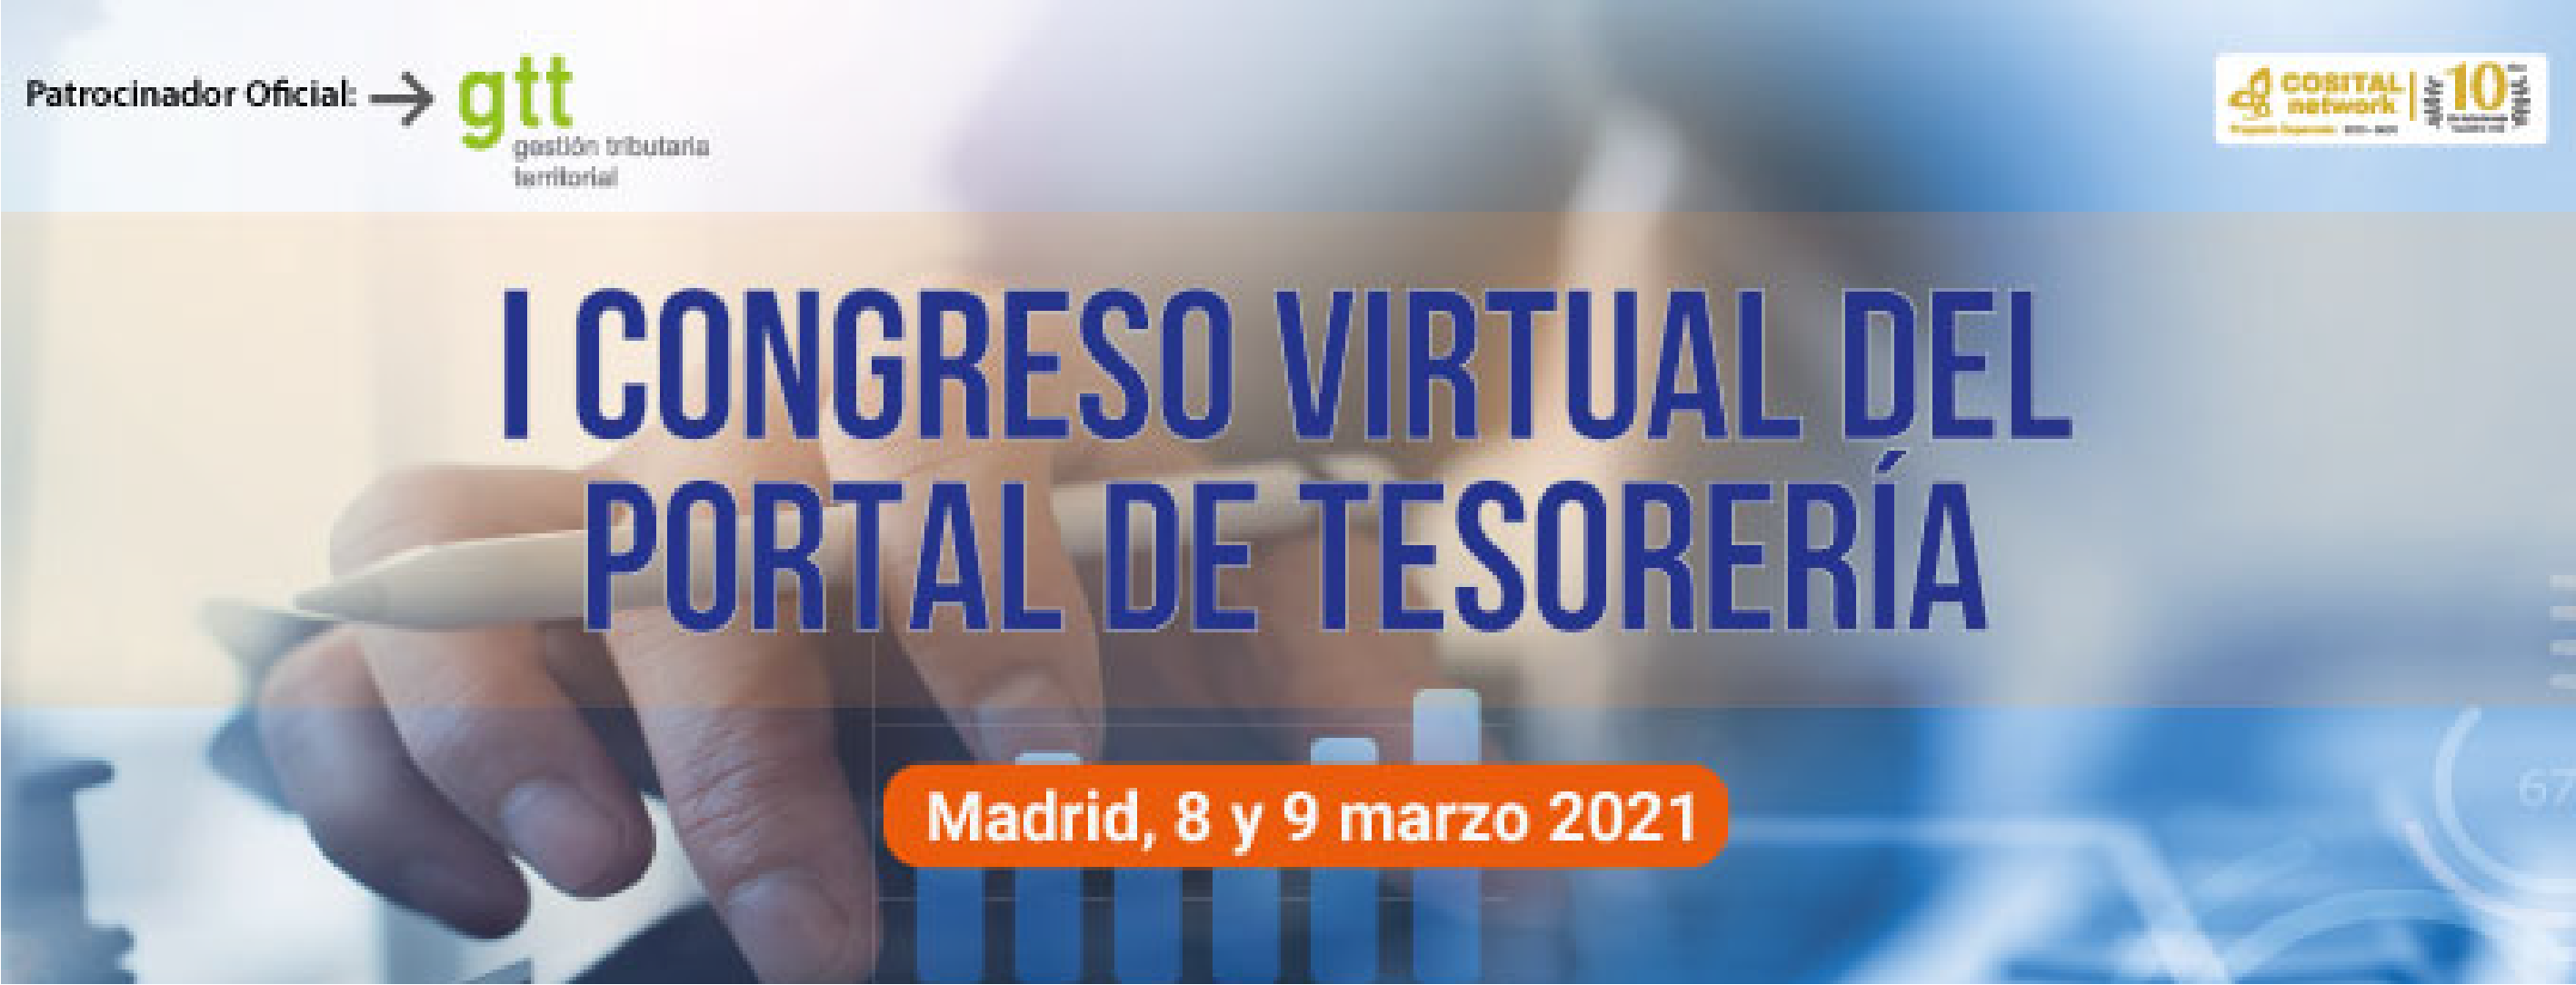 Gtt patrocina el I Congreso virtual del portal de Tesorería